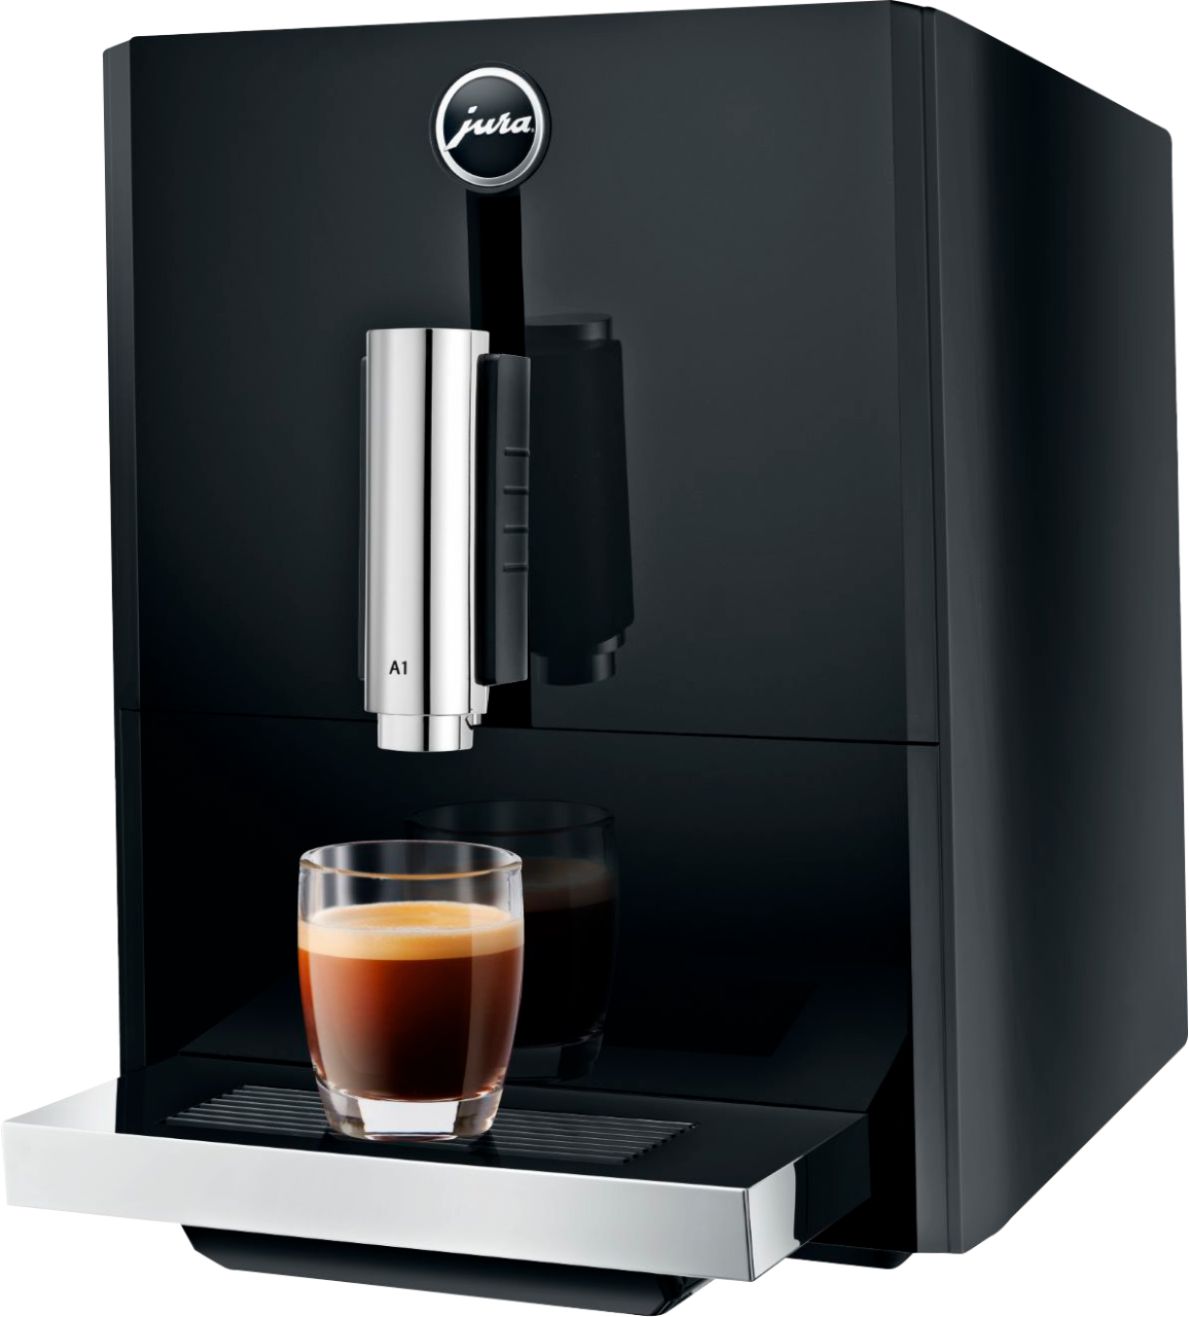 Angle View: Jura - A1 Espresso Machine with 15 bars of pressure - Piano Black